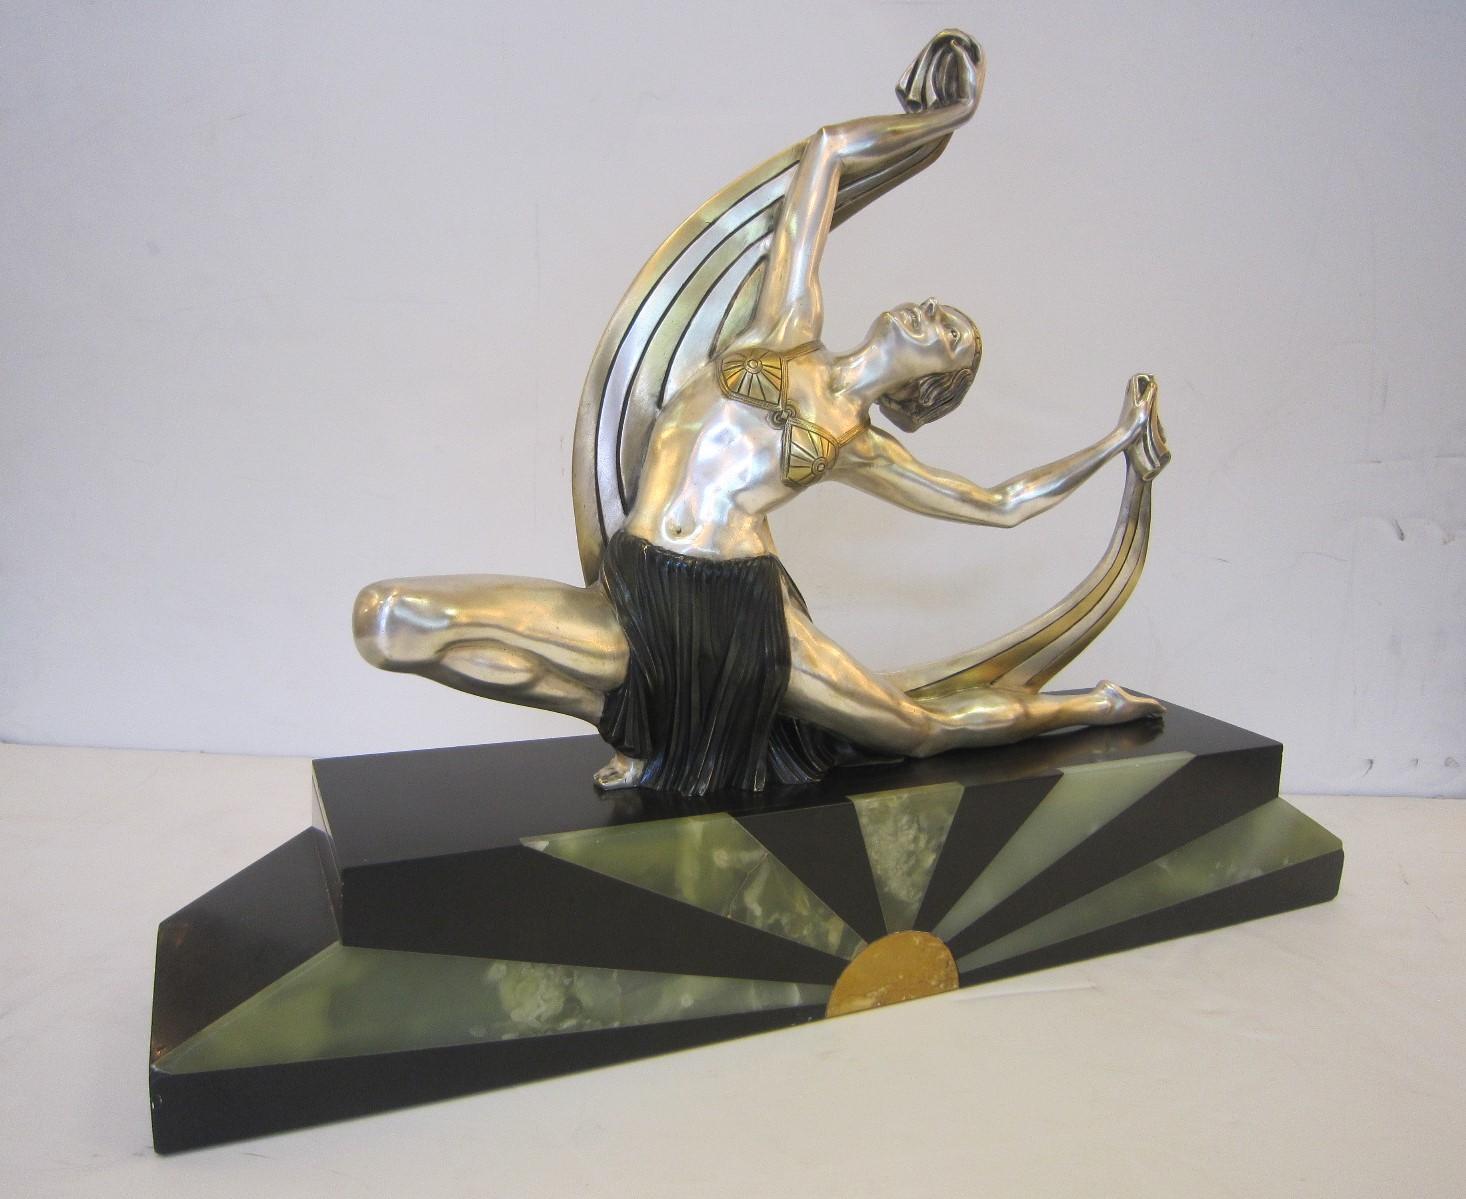 Importante sculpture française Art Déco en bronze doré:: nickelé et polychromé représentant une danseuse par J. Lormier. 
La figure portant un corsage en forme de soutien-gorge et une jupe plissée est représentée comme une danseuse:: agenouillée